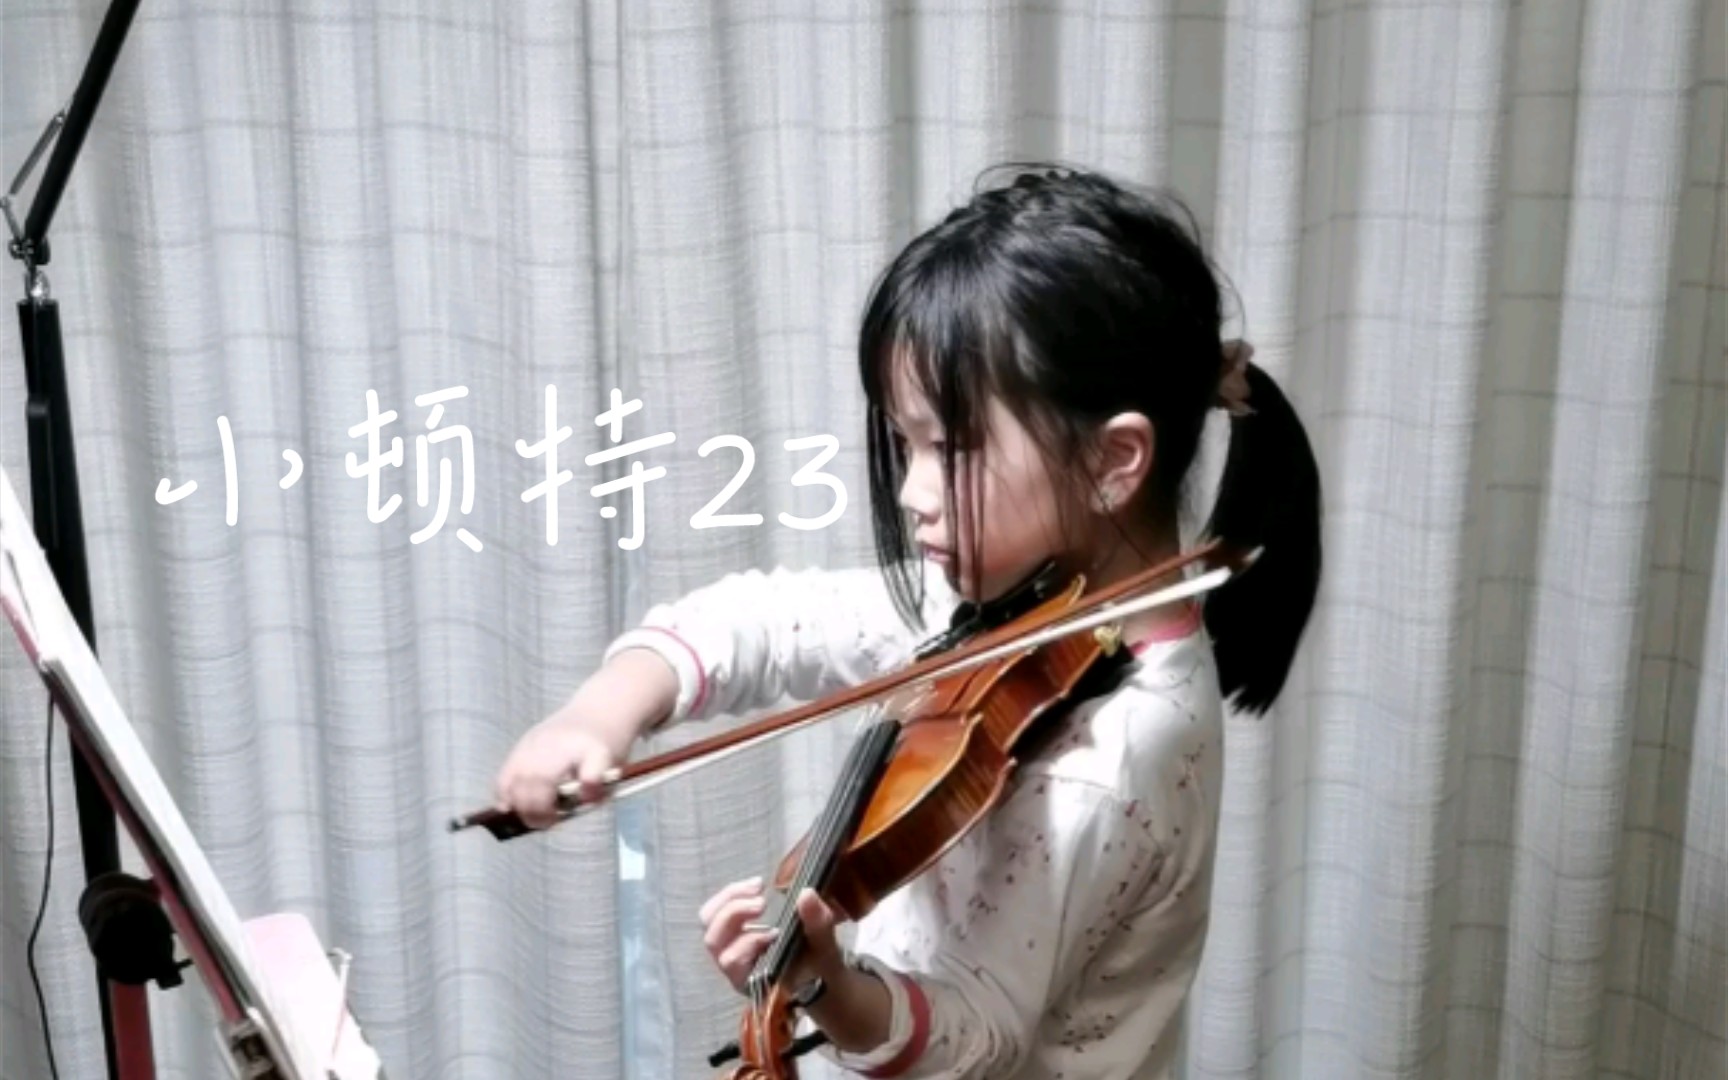 [图]小提琴日常练习曲小顿特23课20220409